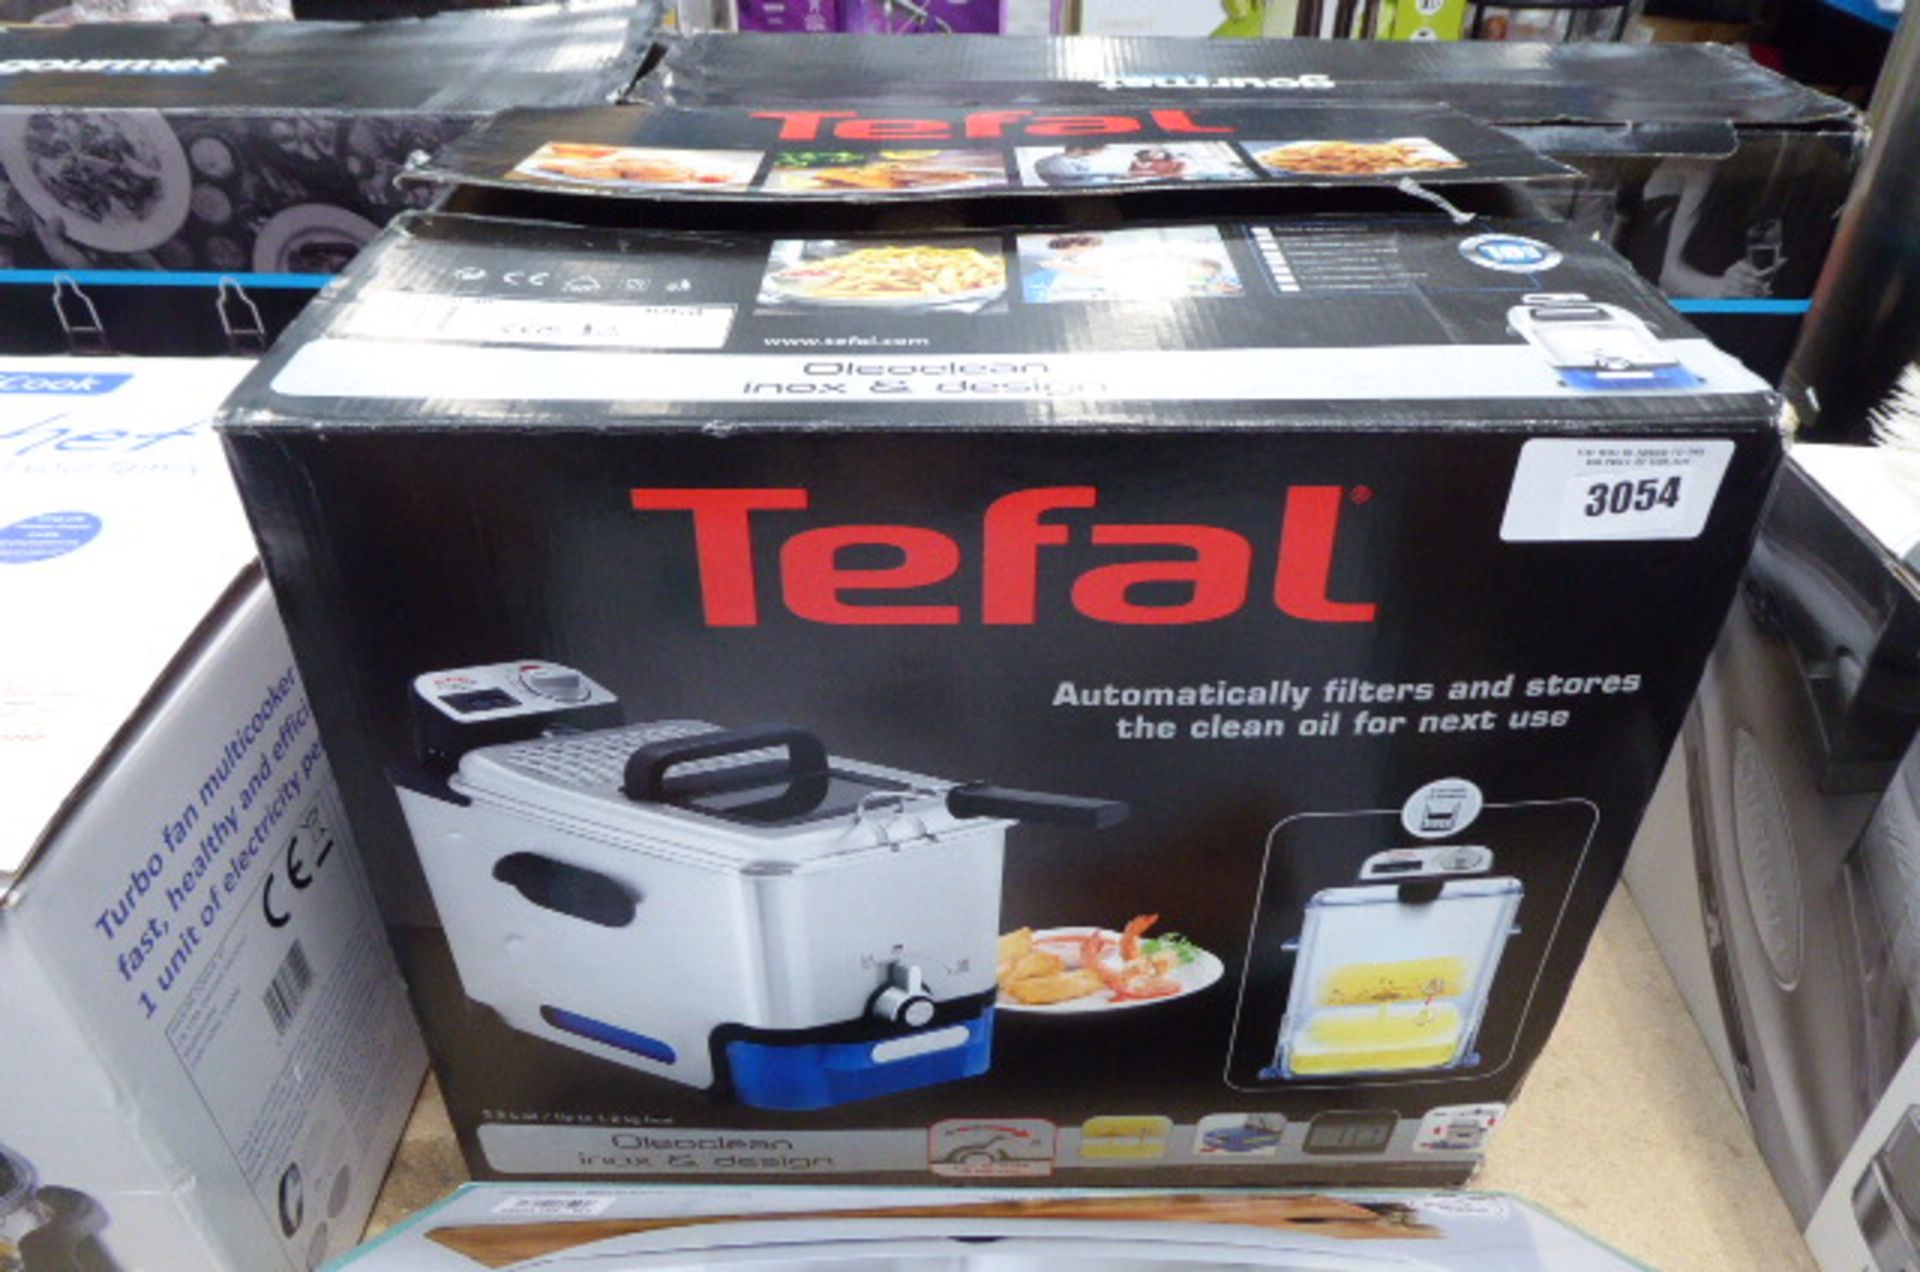 Boxed Tefal filter fryer